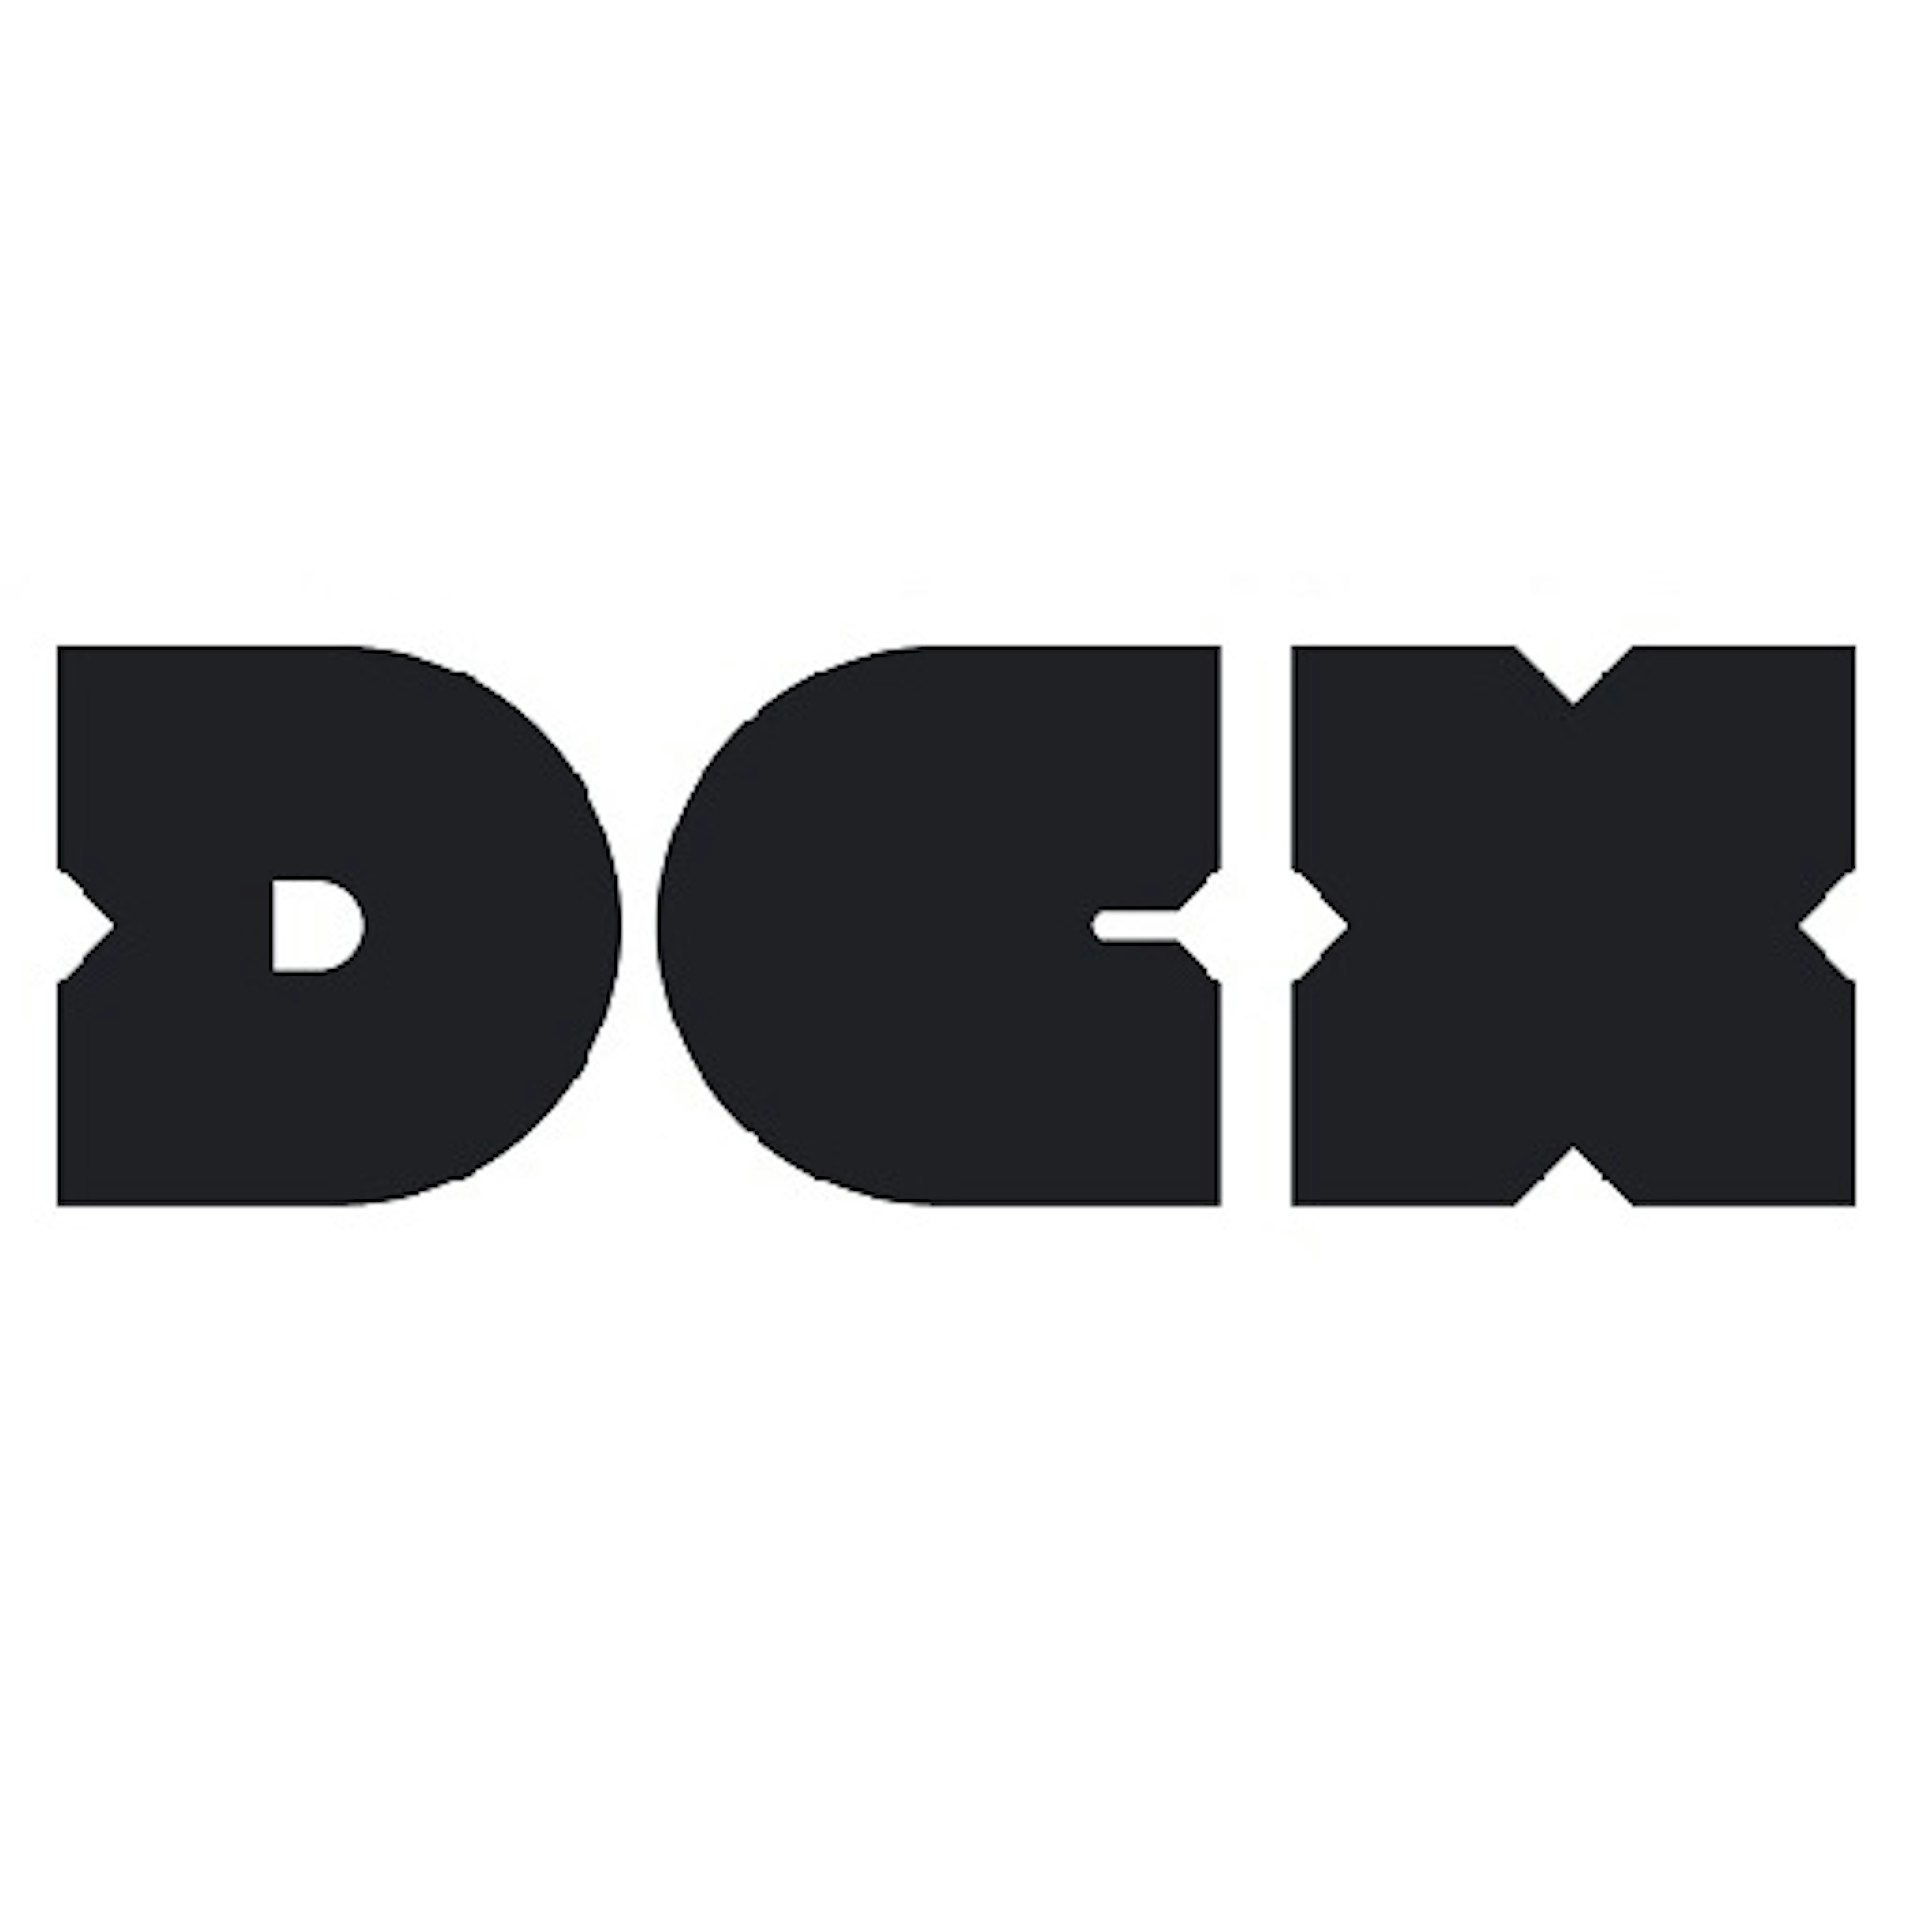 Paragon DCX | Open Mic | The Drum